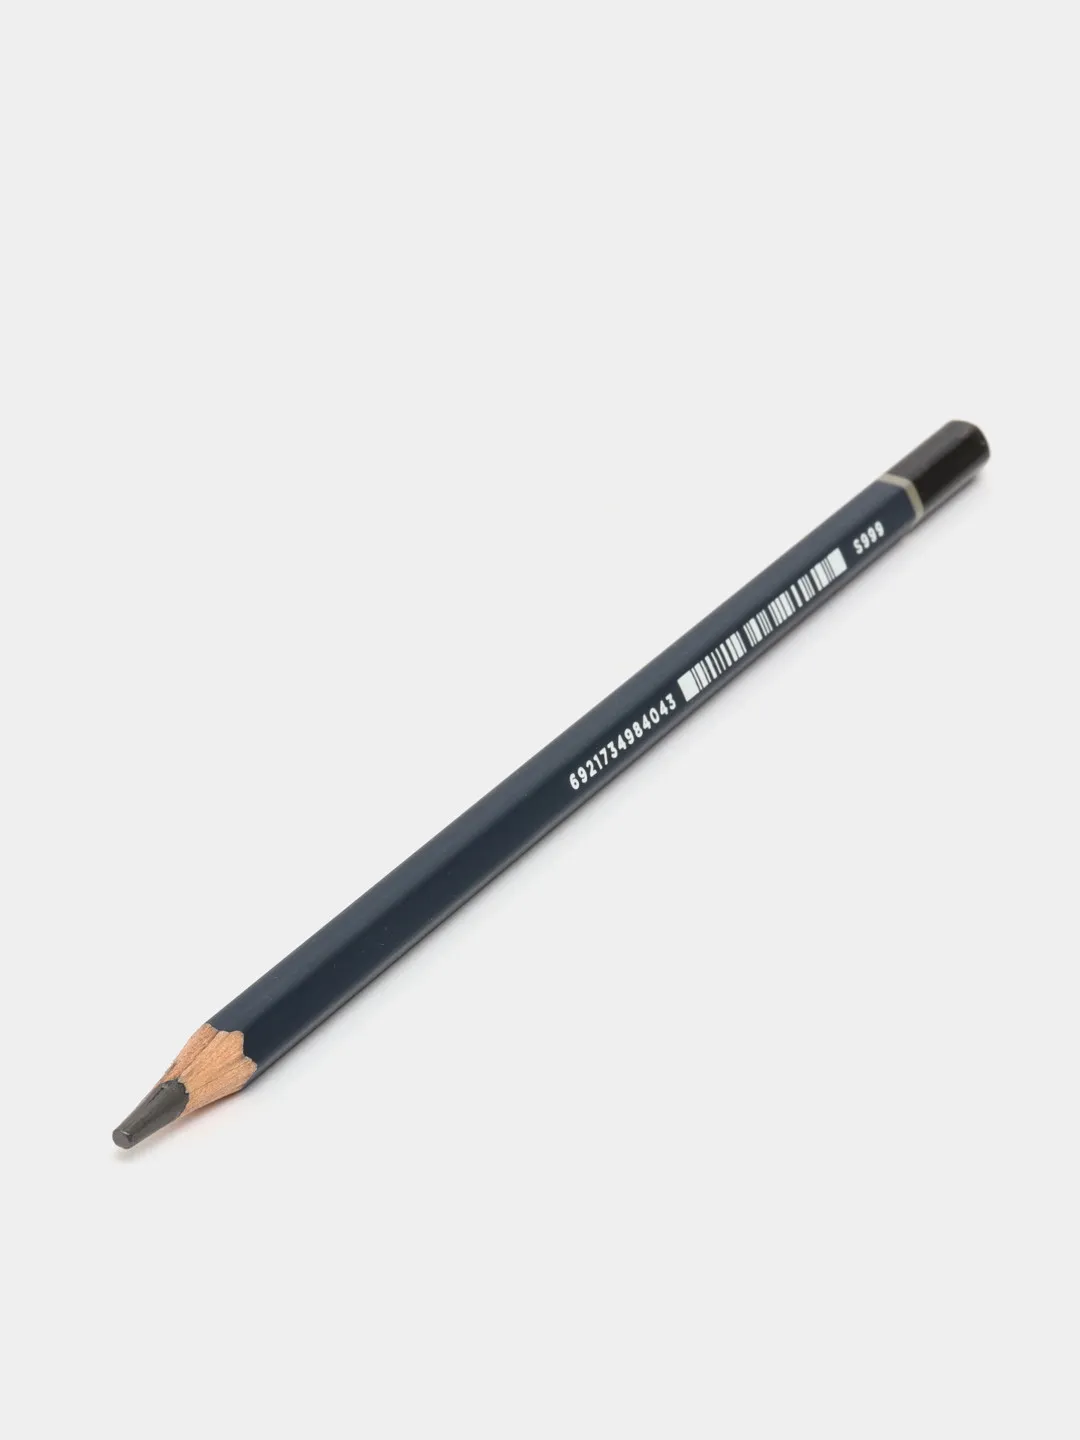 Pencil Nuevo 7B S999 Deli#1